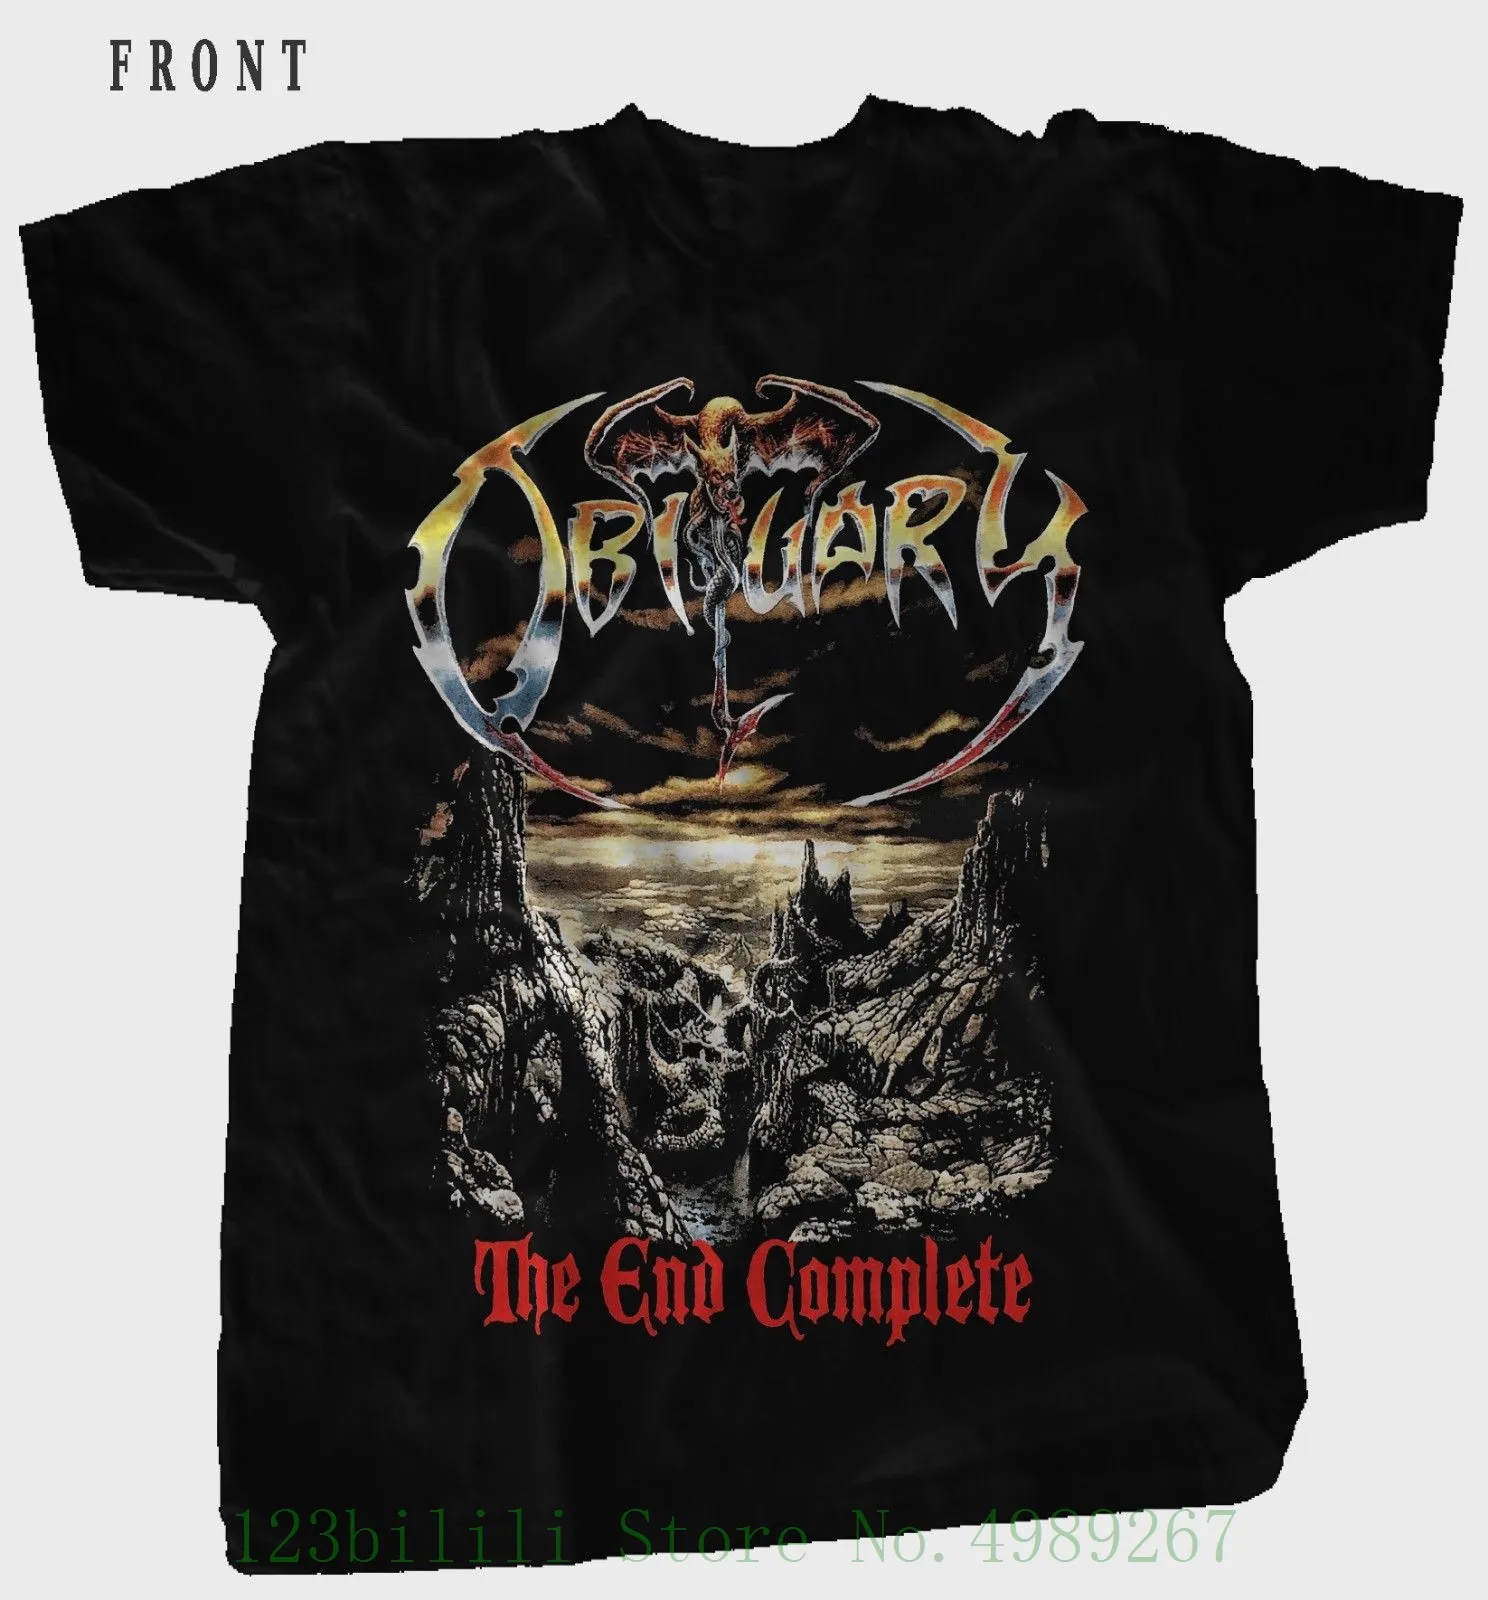 Obituary-The End Complete-Американская металлическая лента смерти, футболка, Размеры: от S до 6xl, короткий рукав, Летний стиль